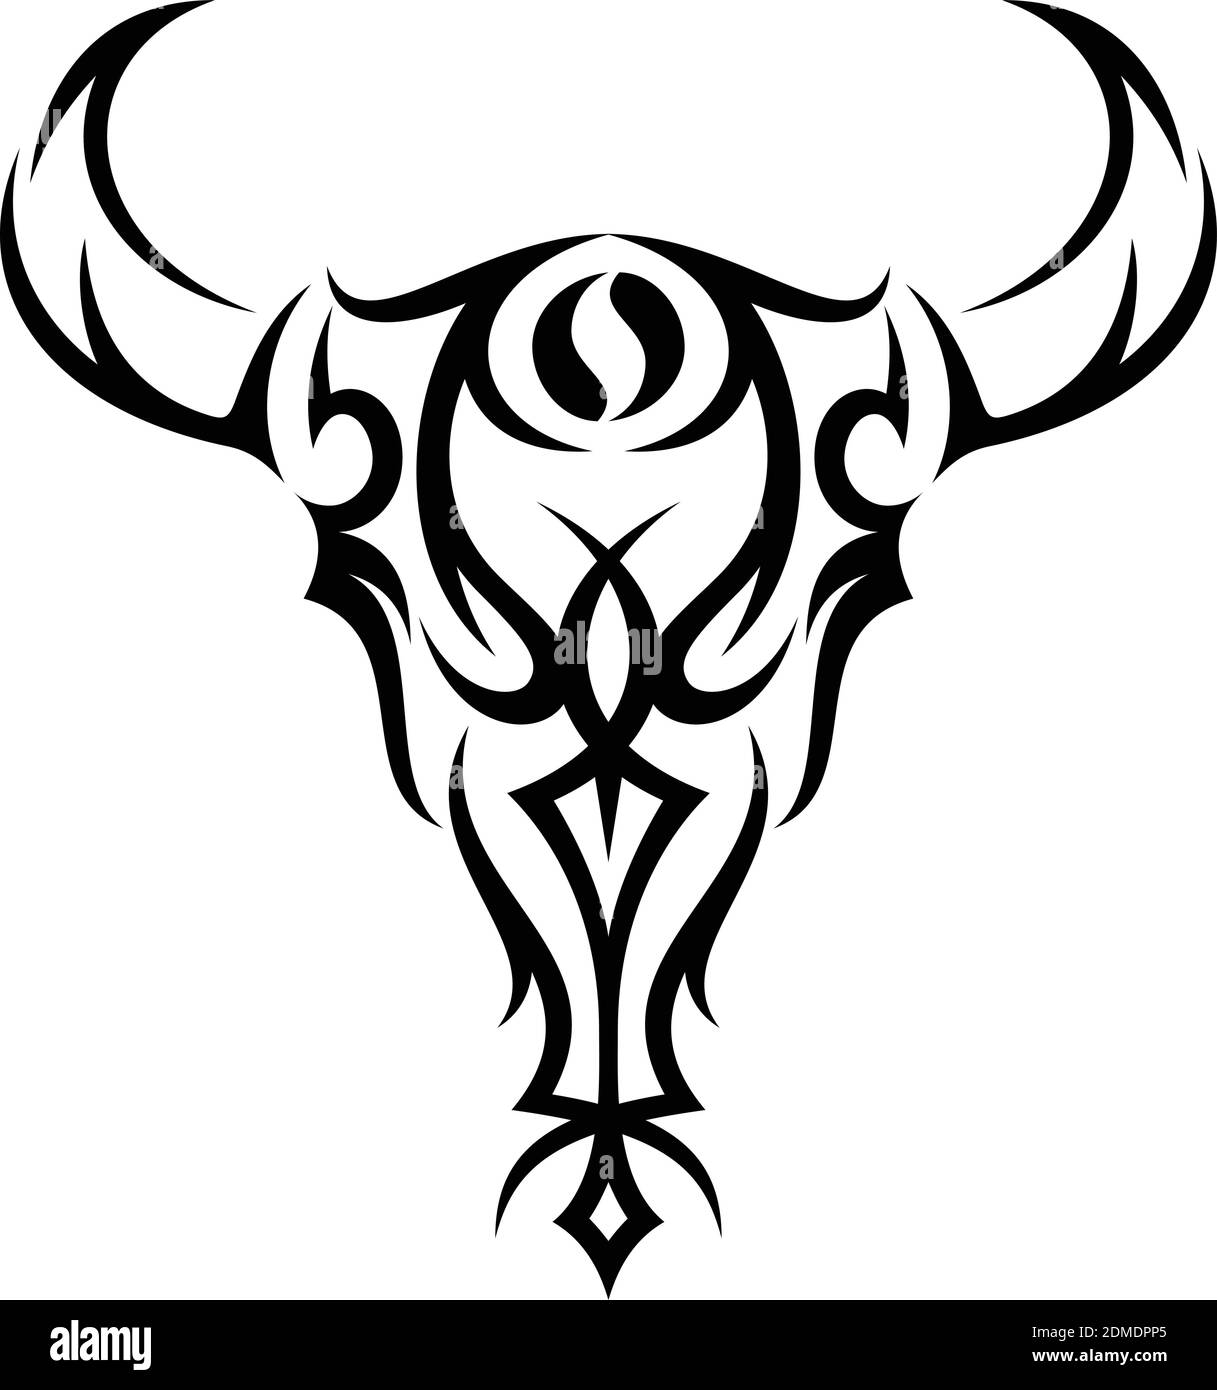 Meilleure illustration de silhouette créative tête bison tribal design concept. Faune animale simple. Illustration vectorielle EPS.8 EPS.10 Illustration de Vecteur